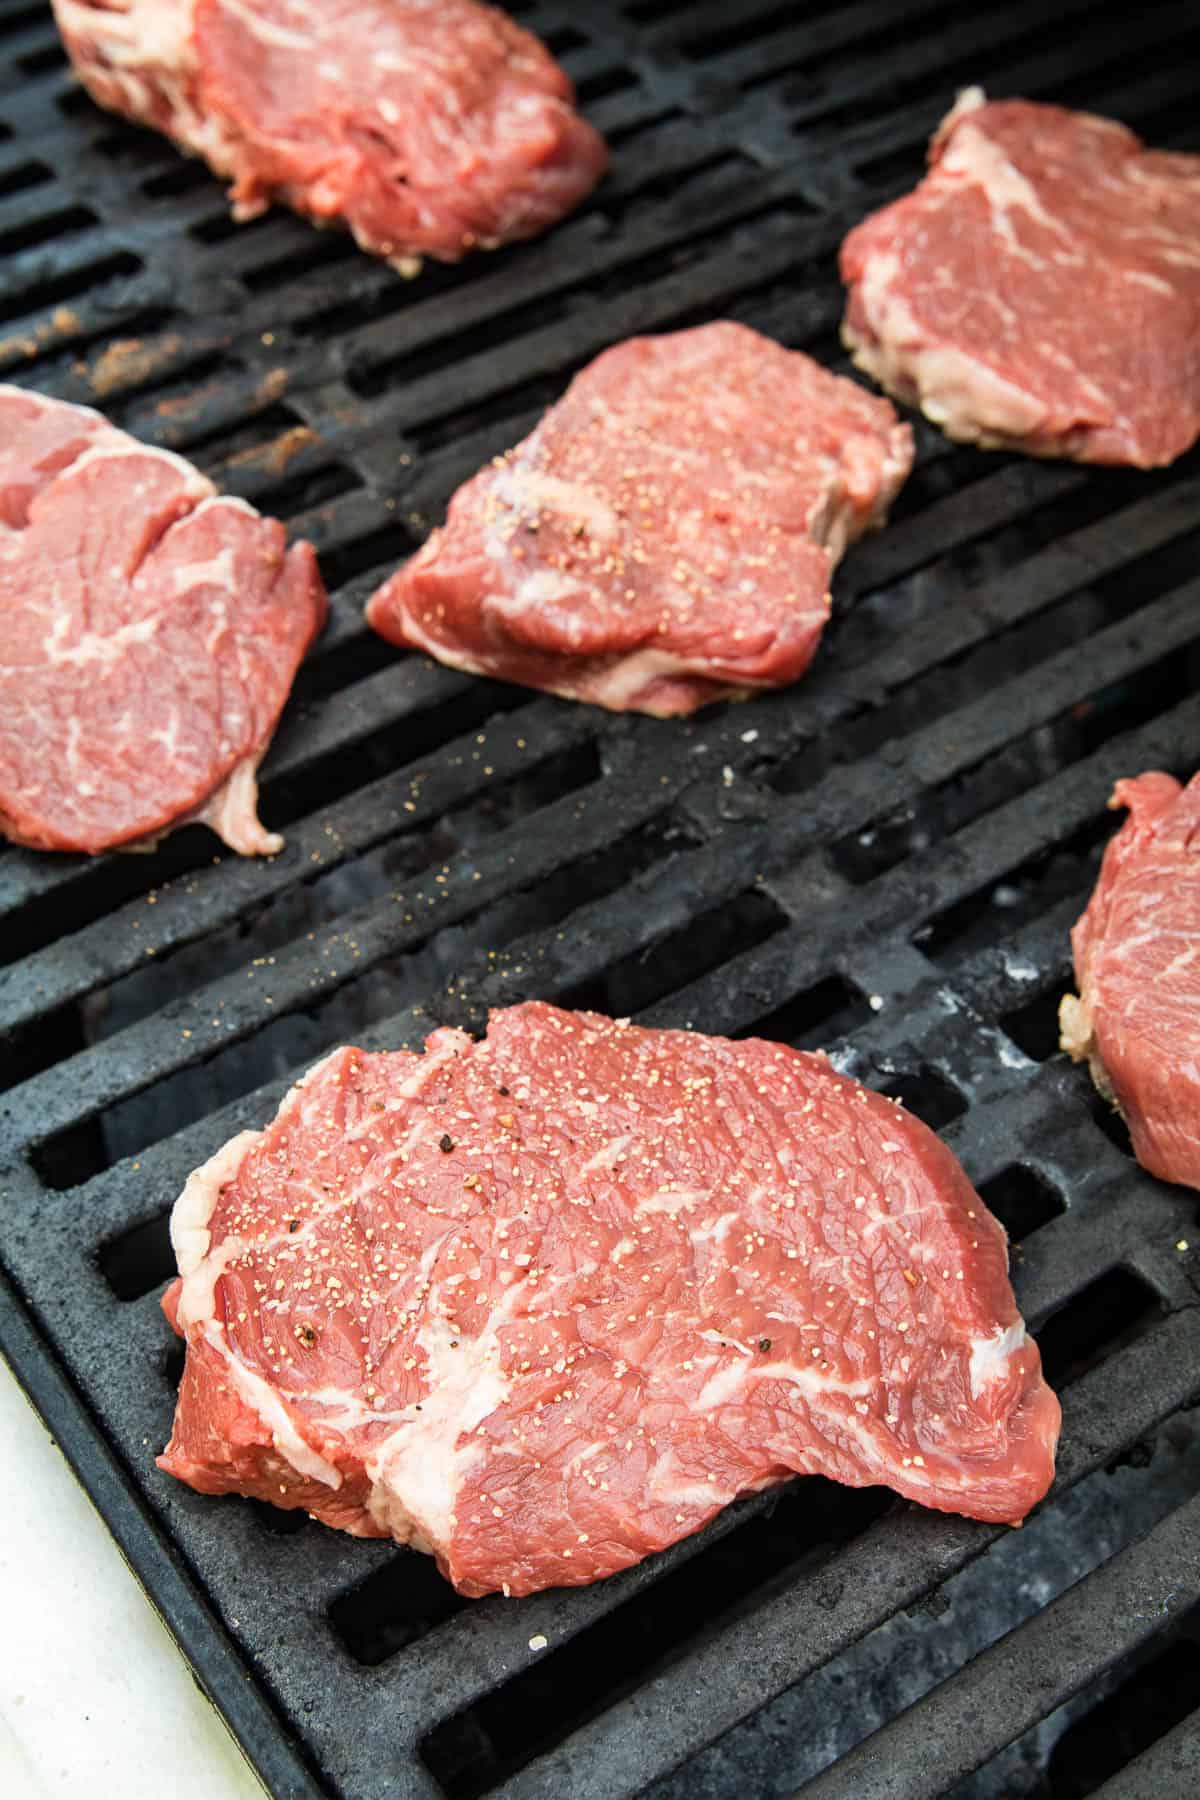 Raw ribeye steak on grill